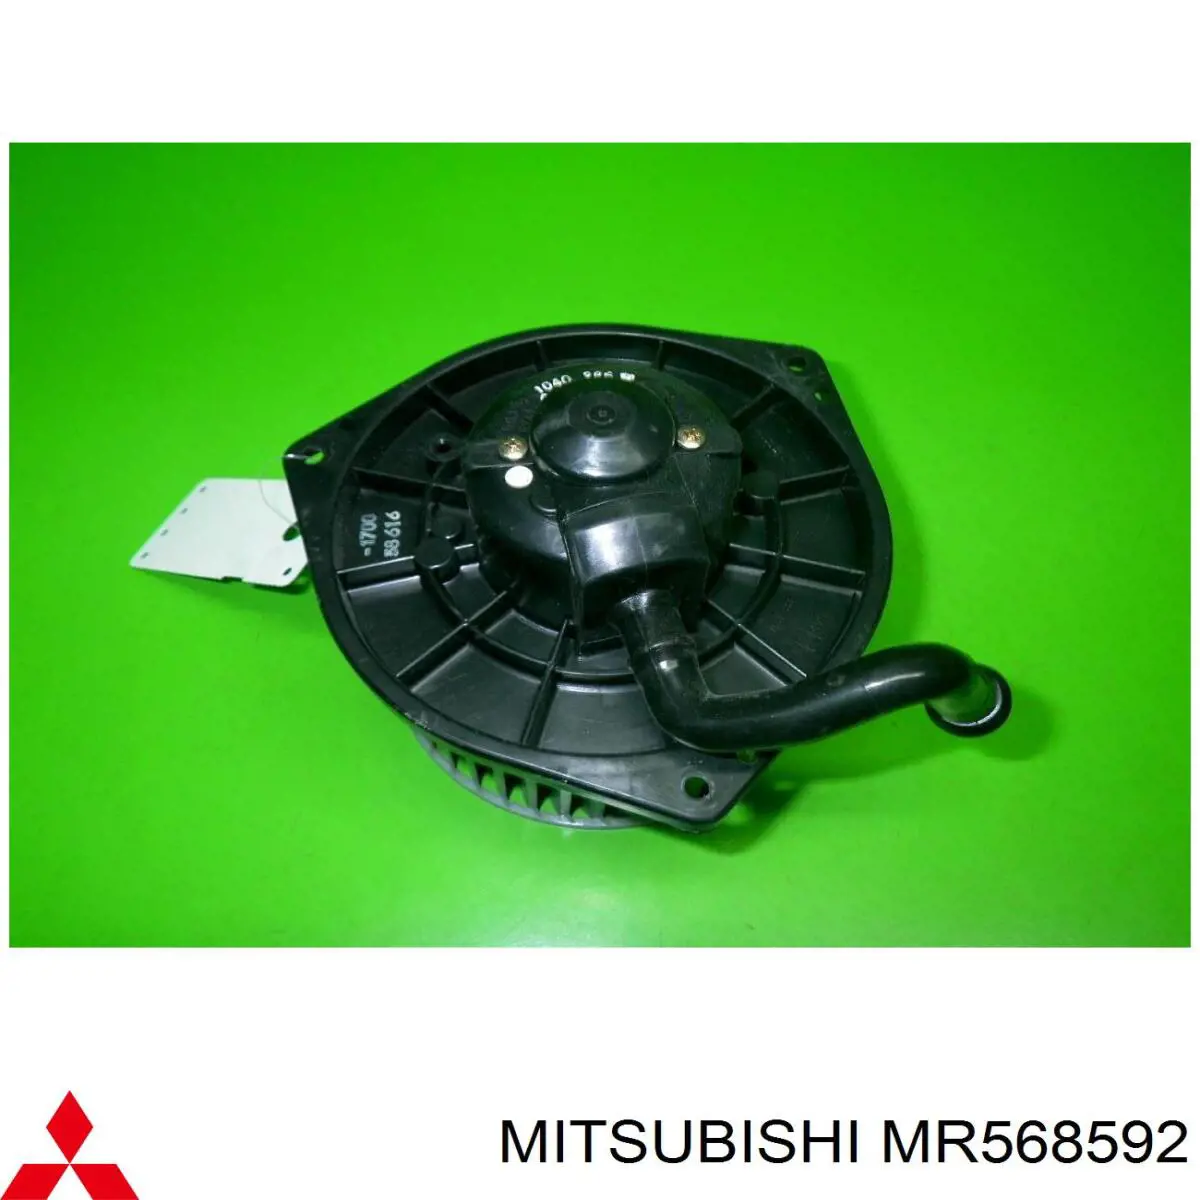 MR568592 Mitsubishi вентилятор печки